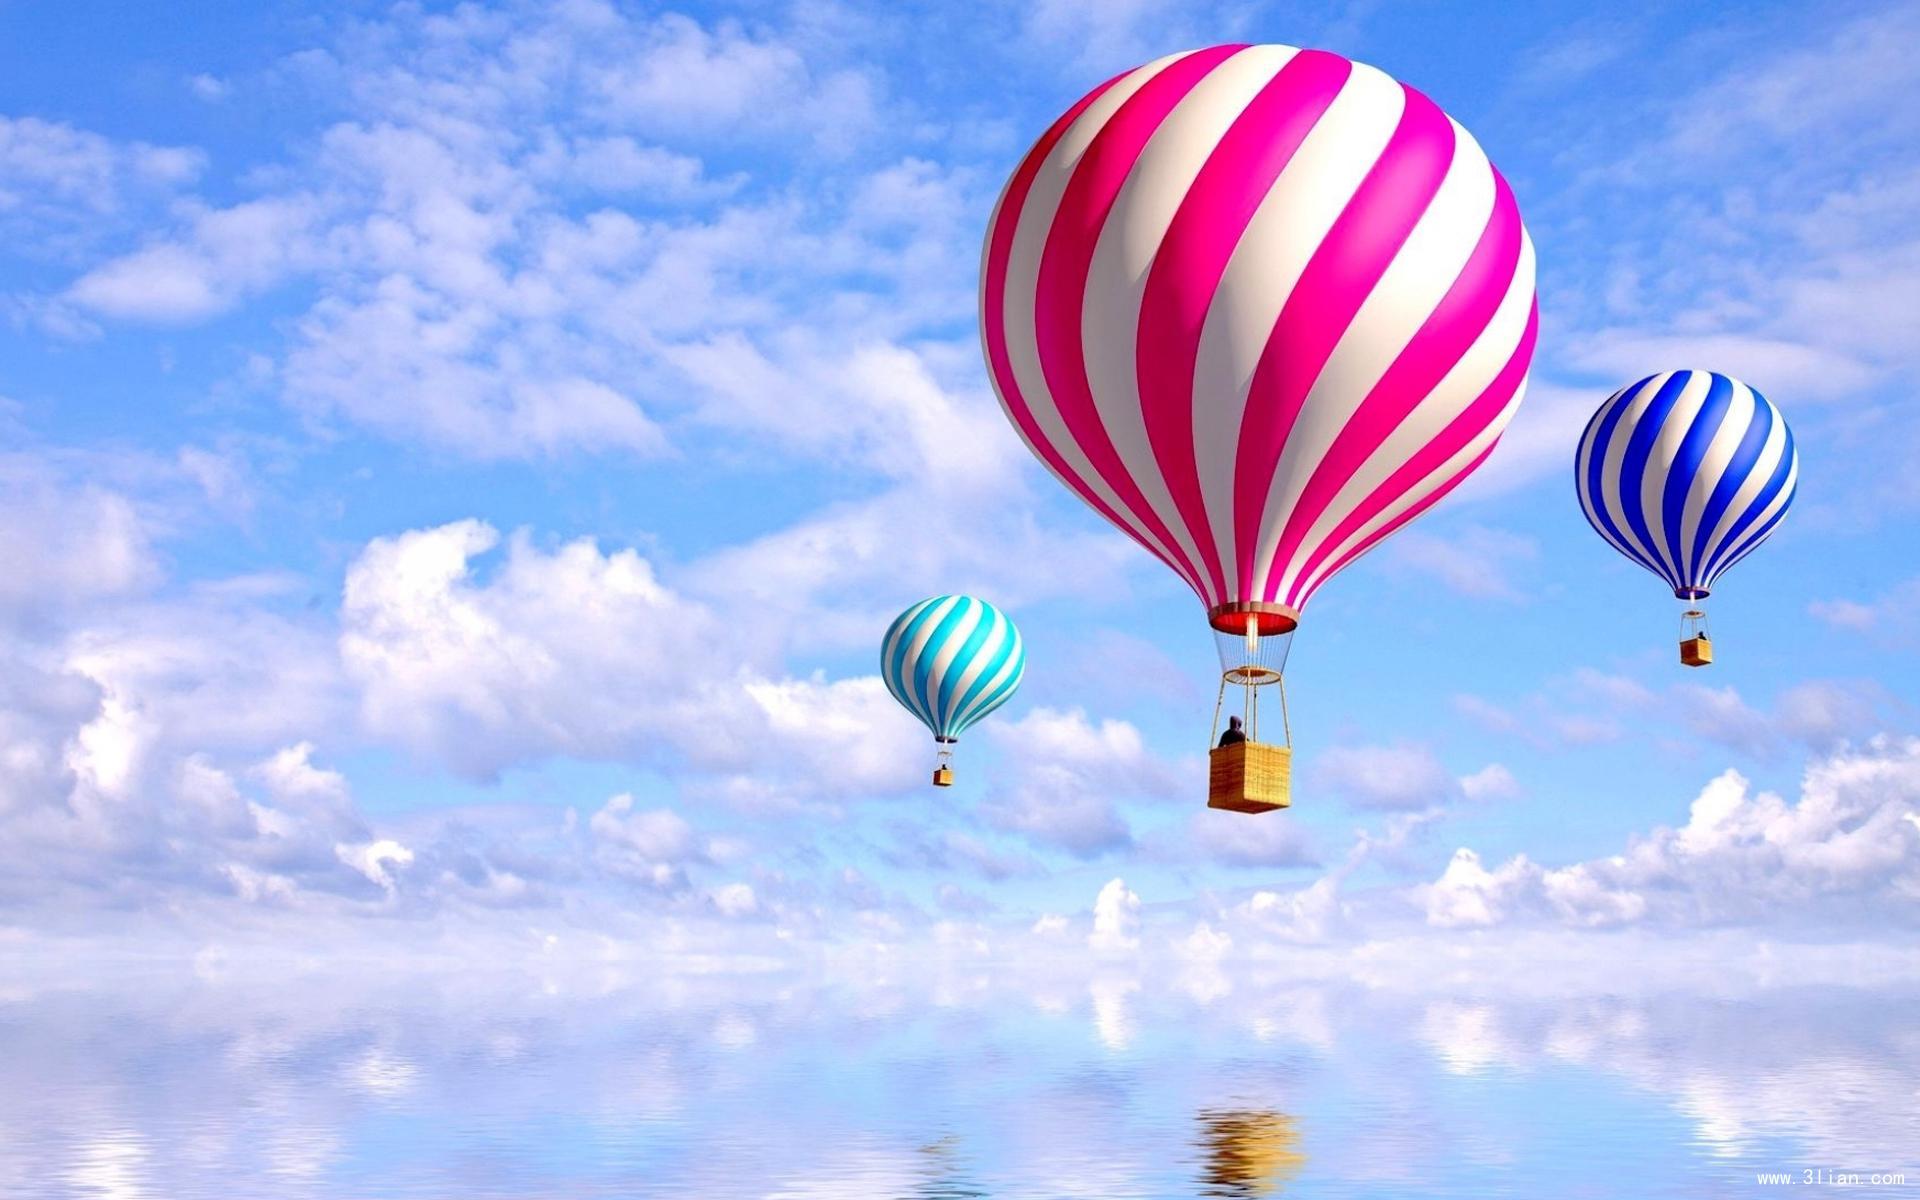 2,000 多颗彩色气球艺术装置八月缤纷降落北京环球金融中心 – NOWRE现客